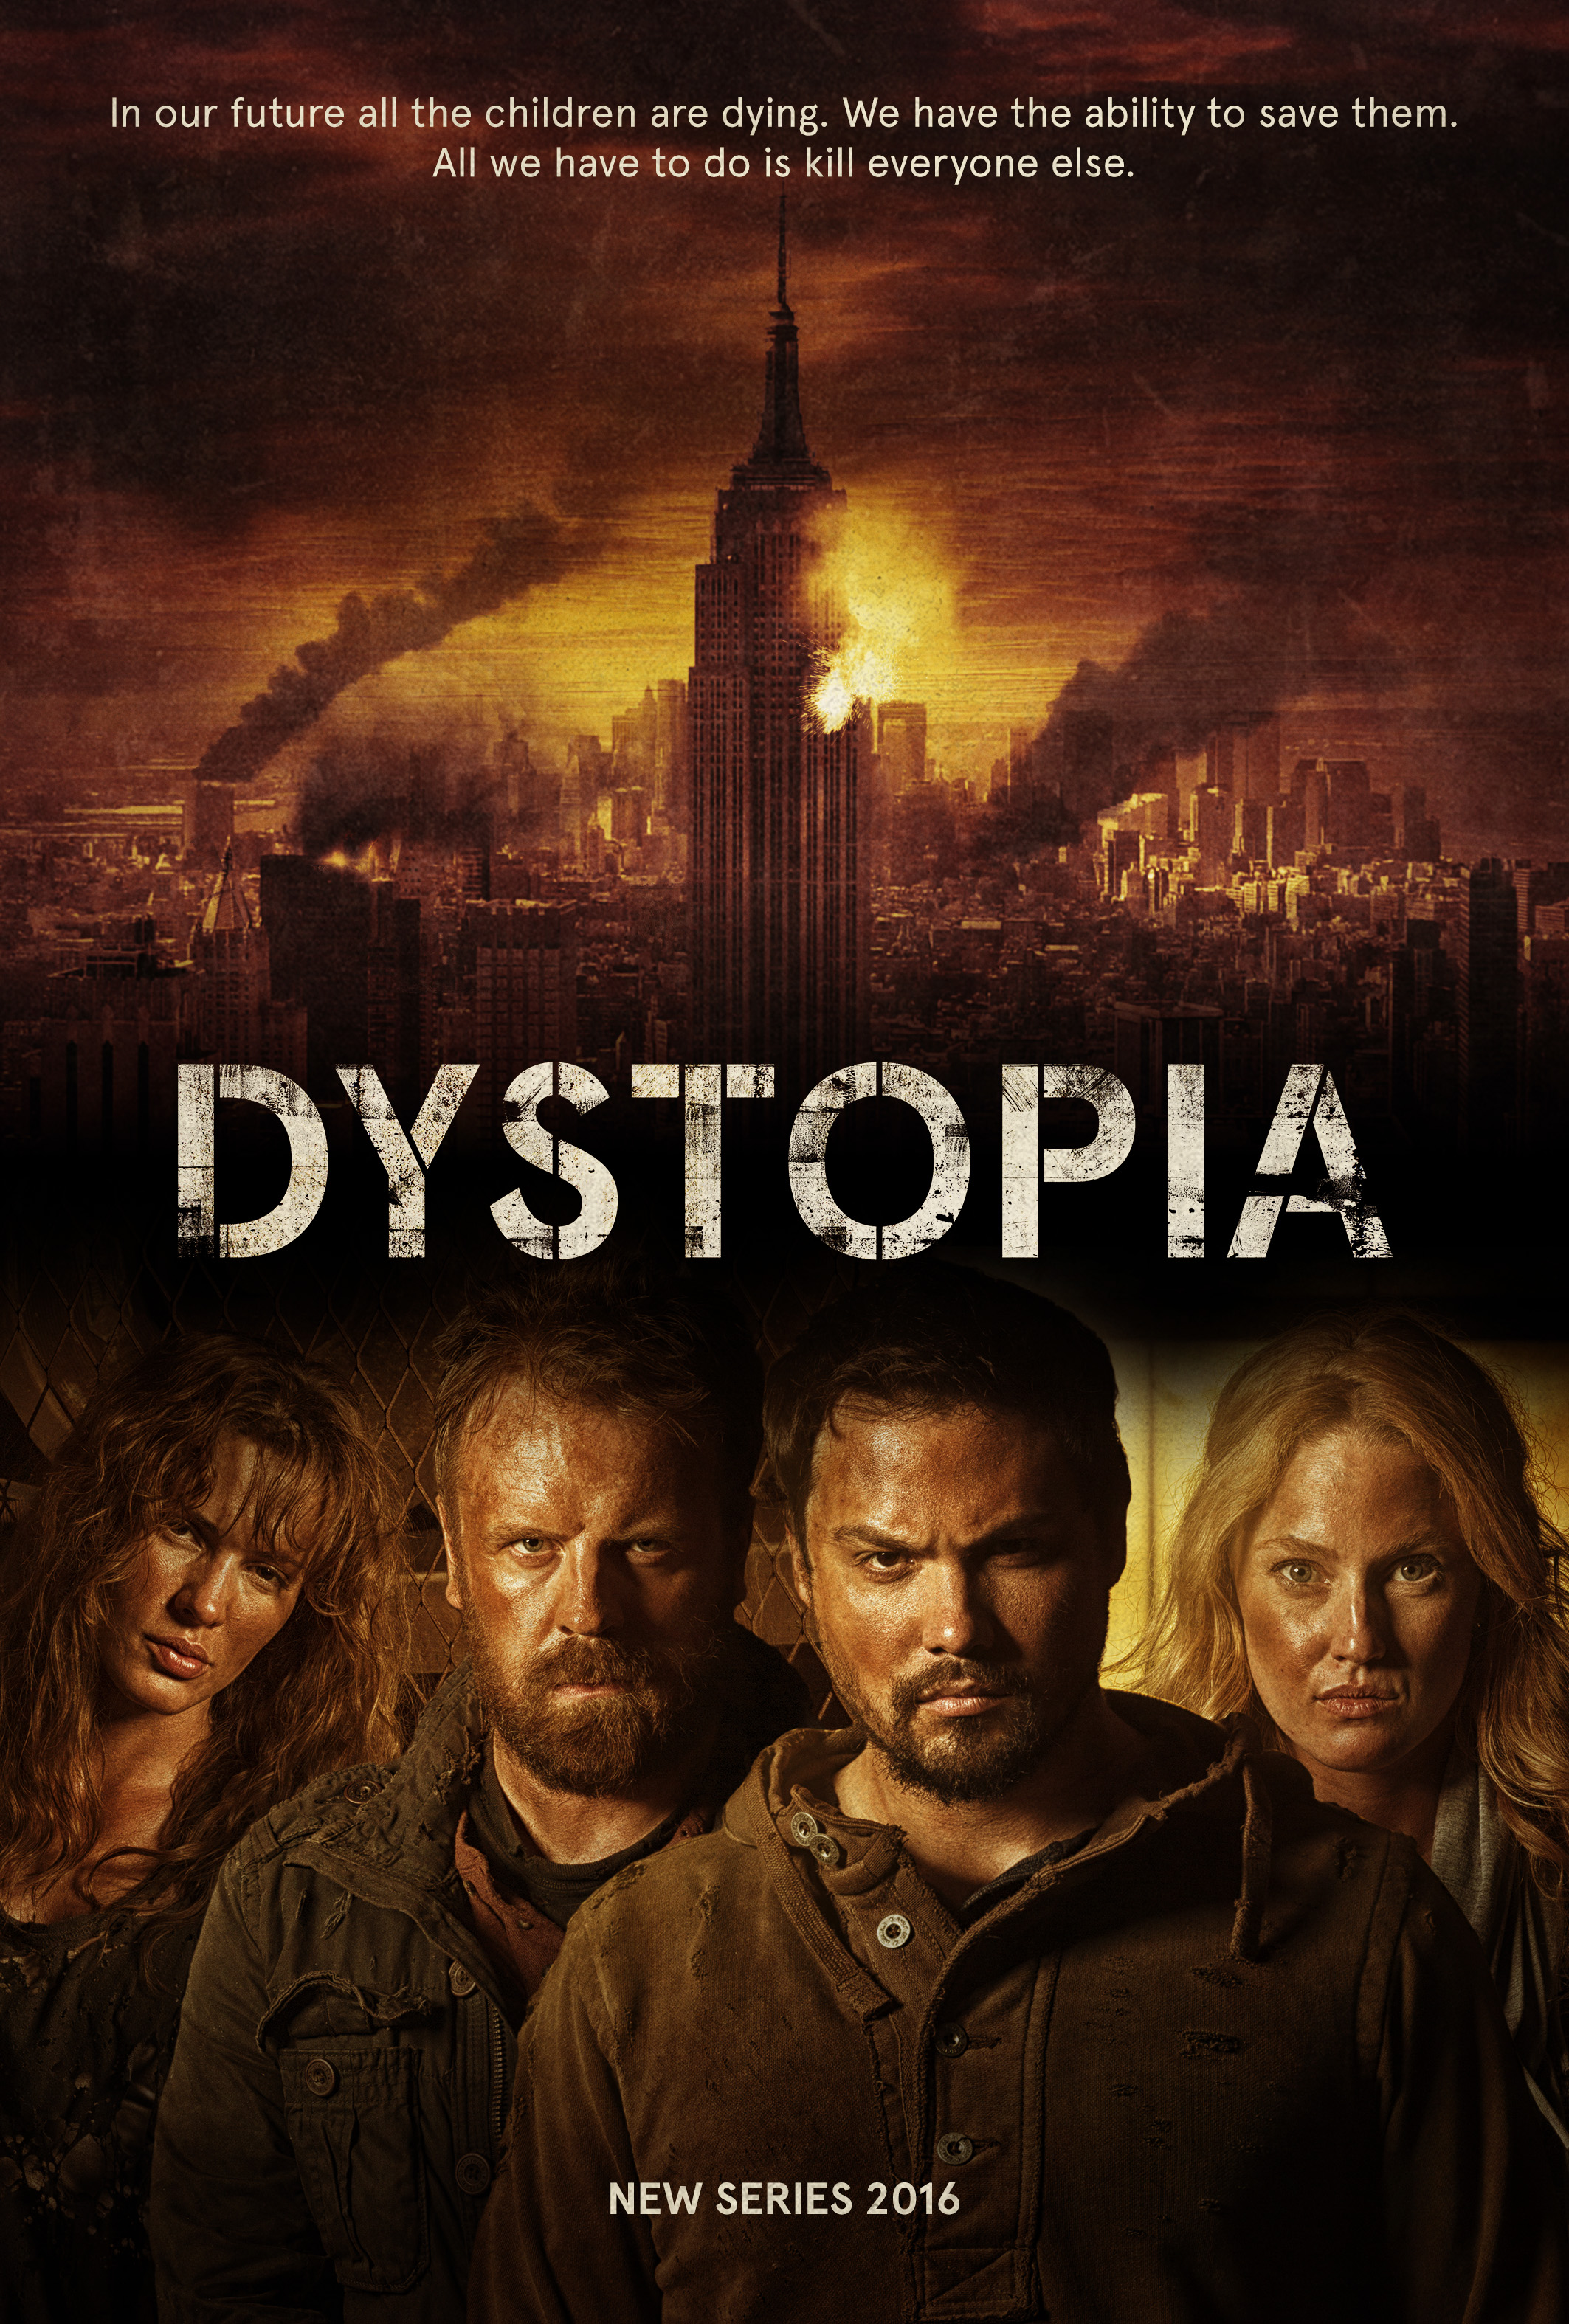 Michael Copon, Simon Phillips, Eve Mauro and Sheena Colette in Dystopia (2016)